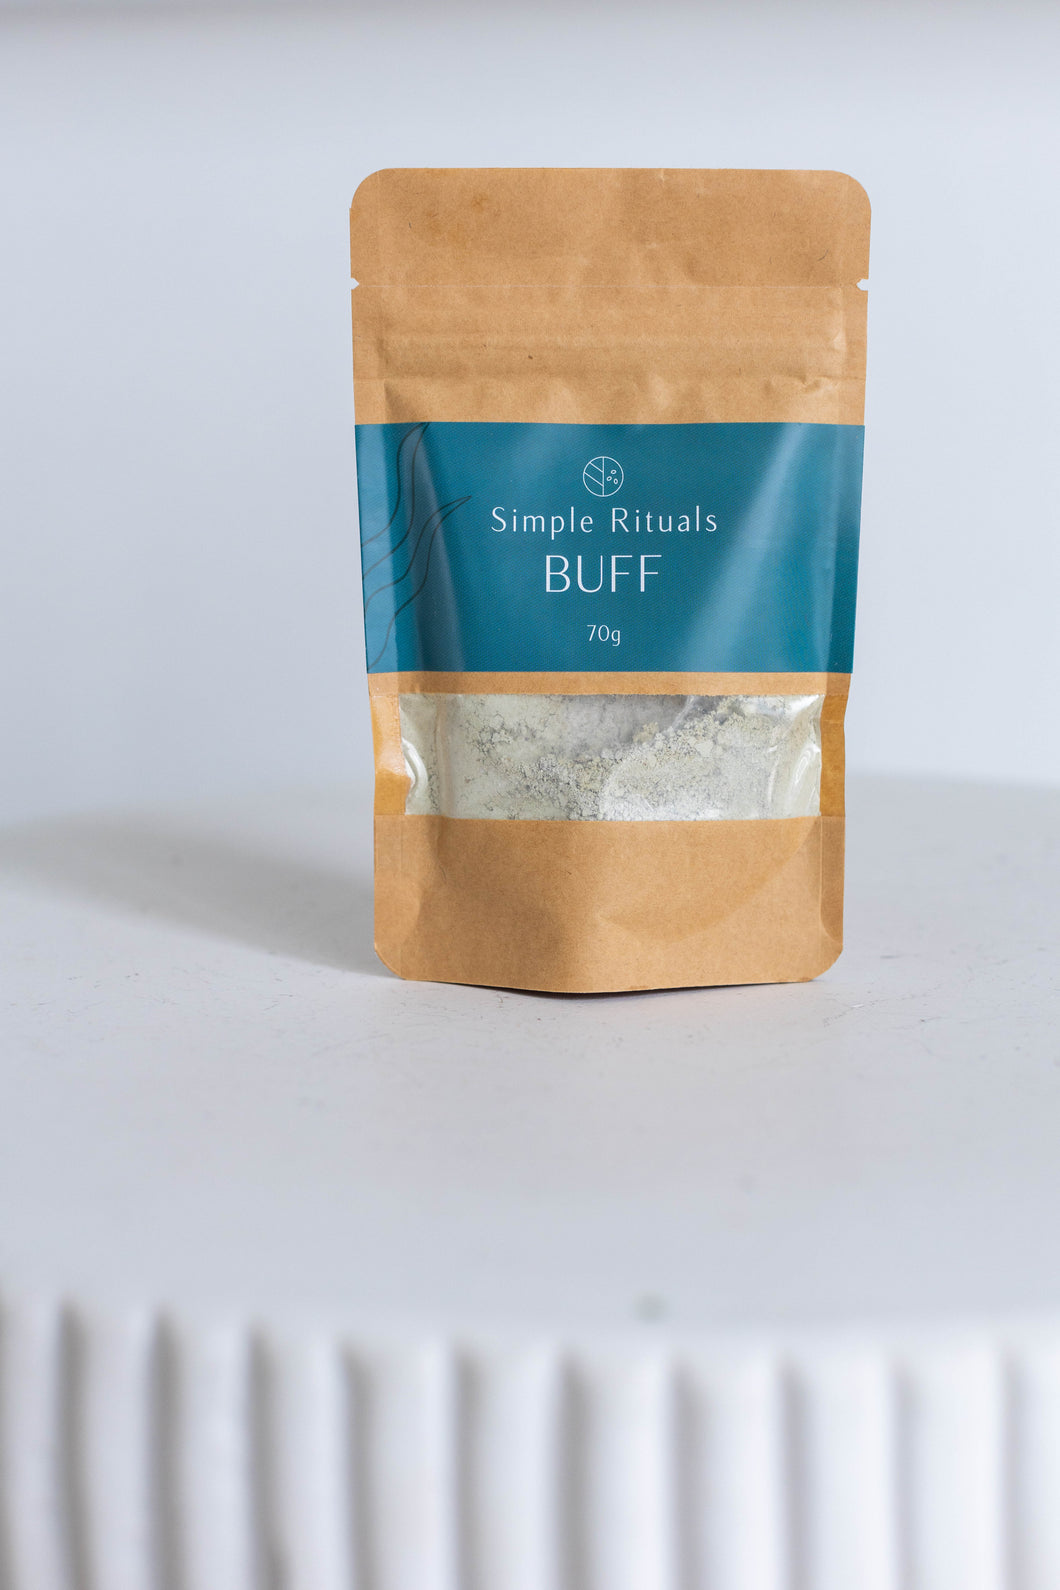 Buff - Exfoliant Powder, A Weekly Ritual